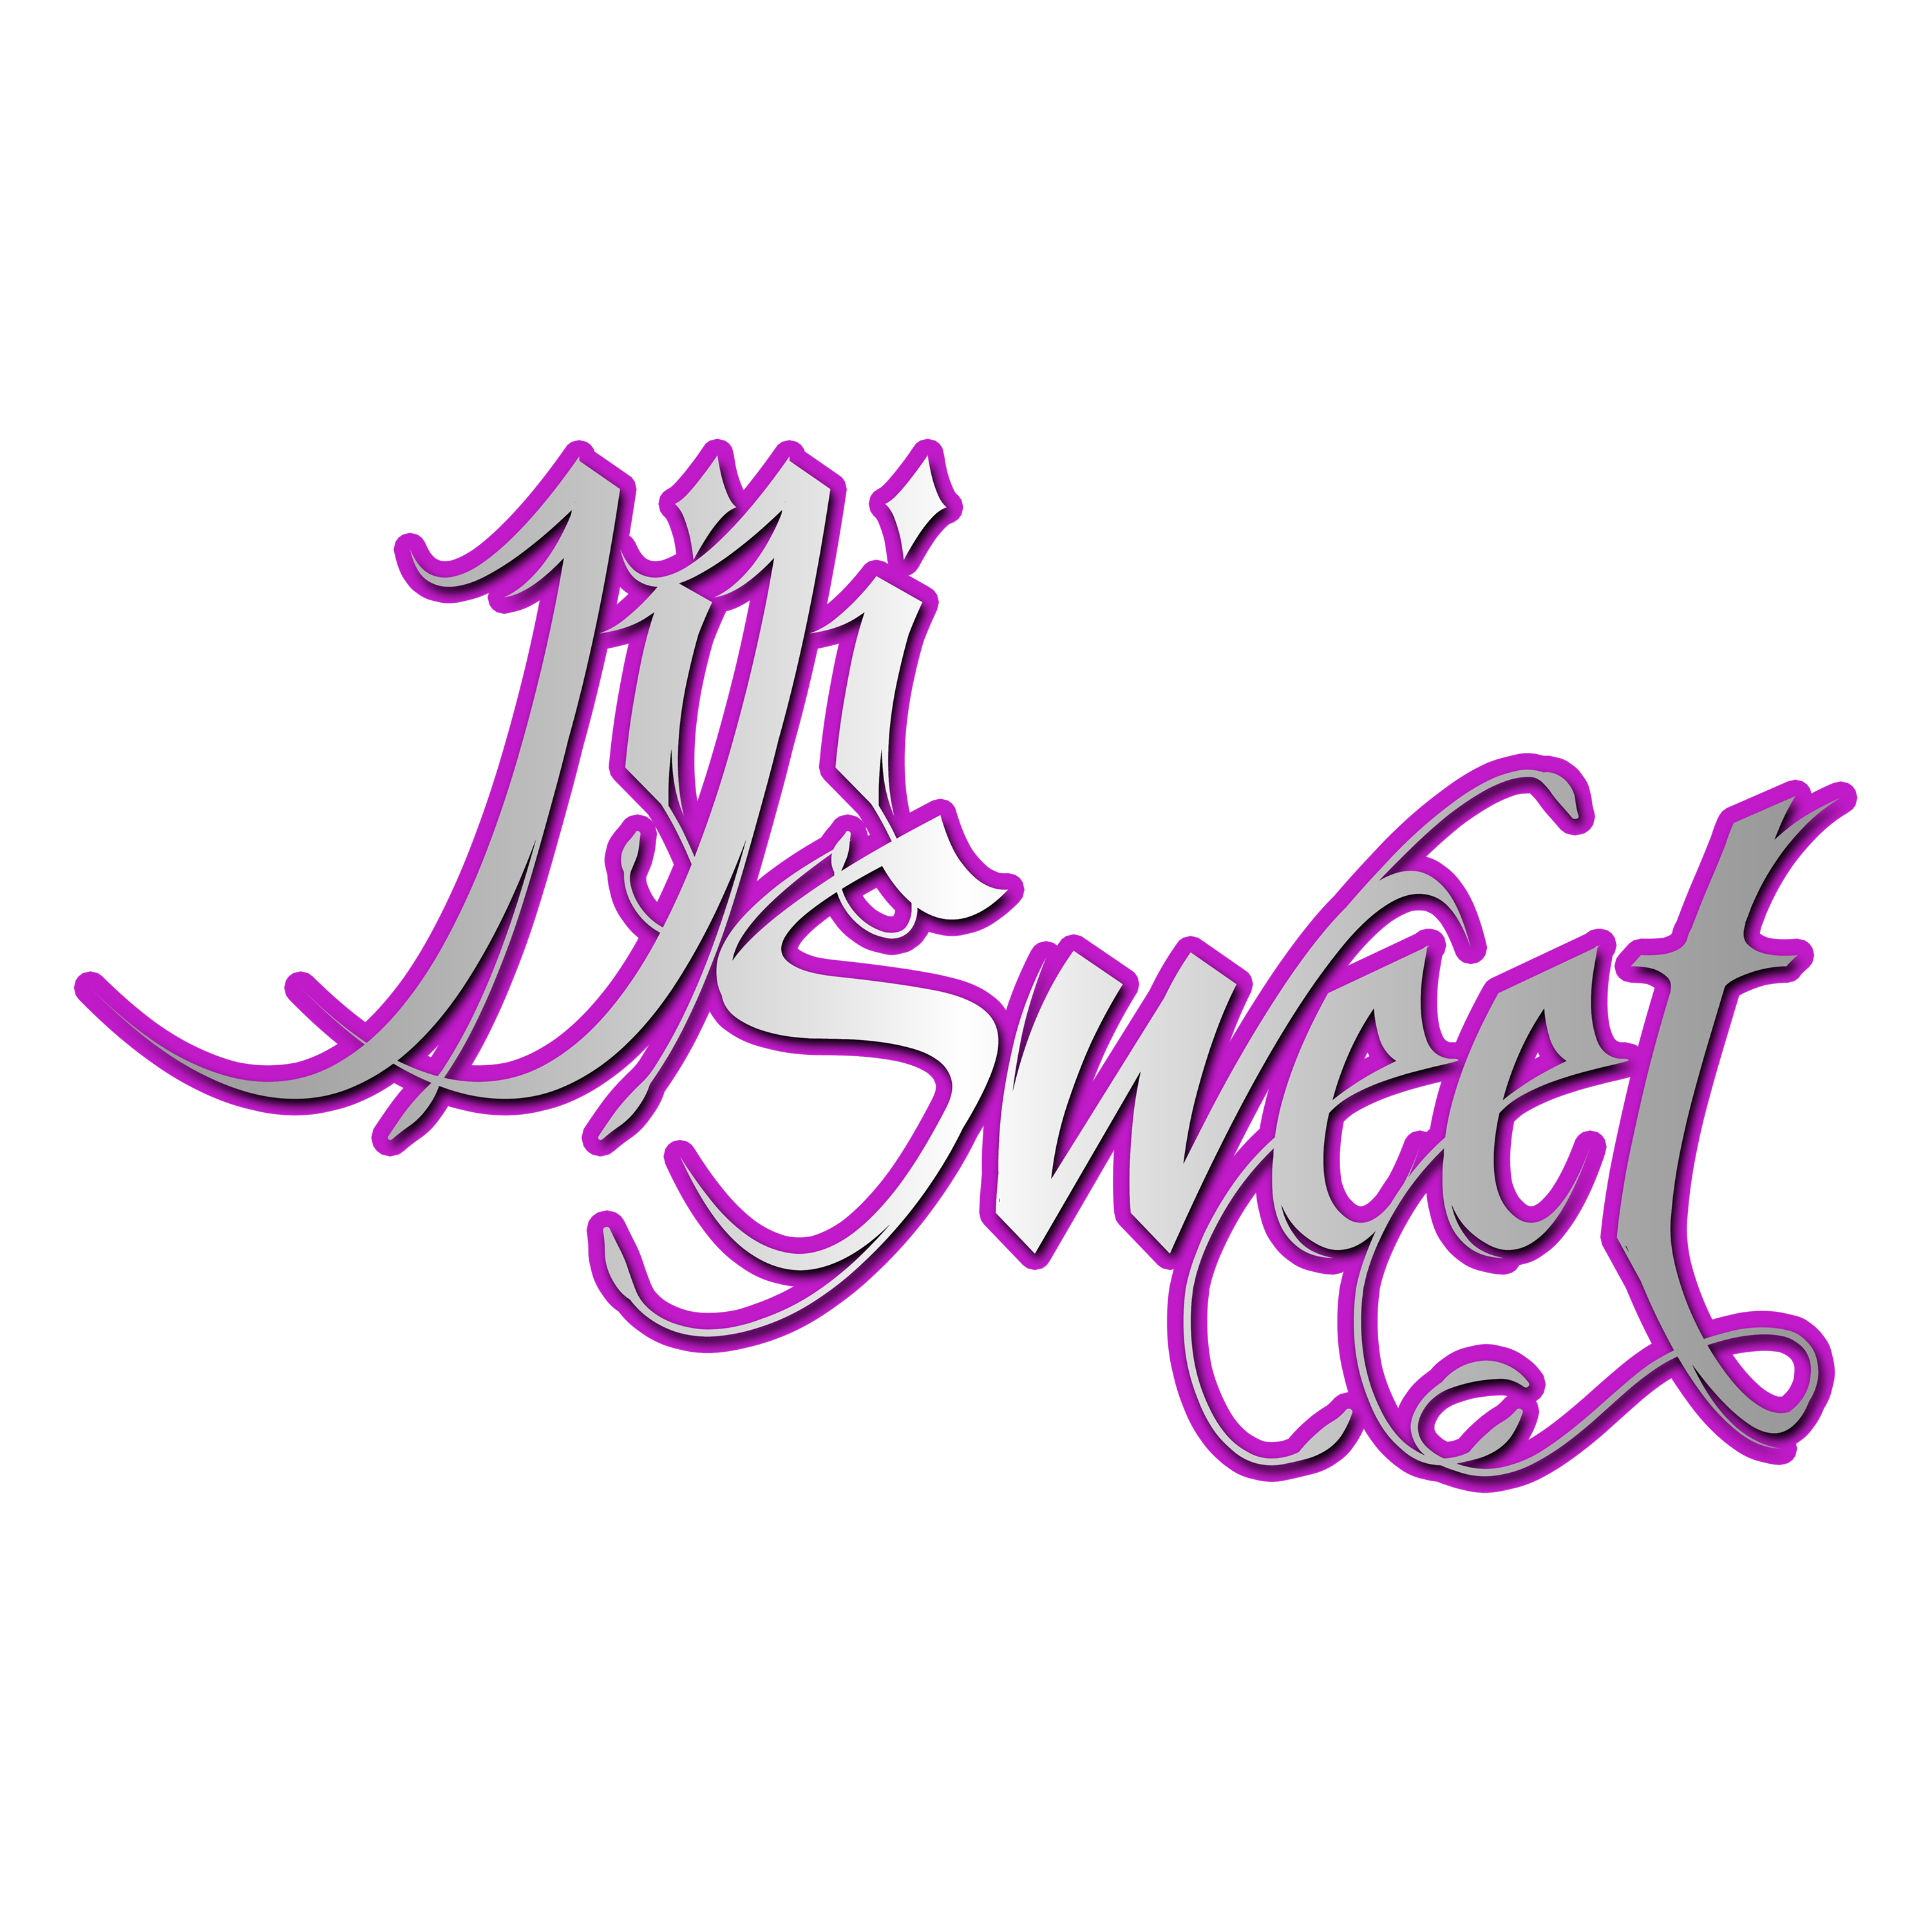 JiJiSweet-Logo.png (1.20 MB)